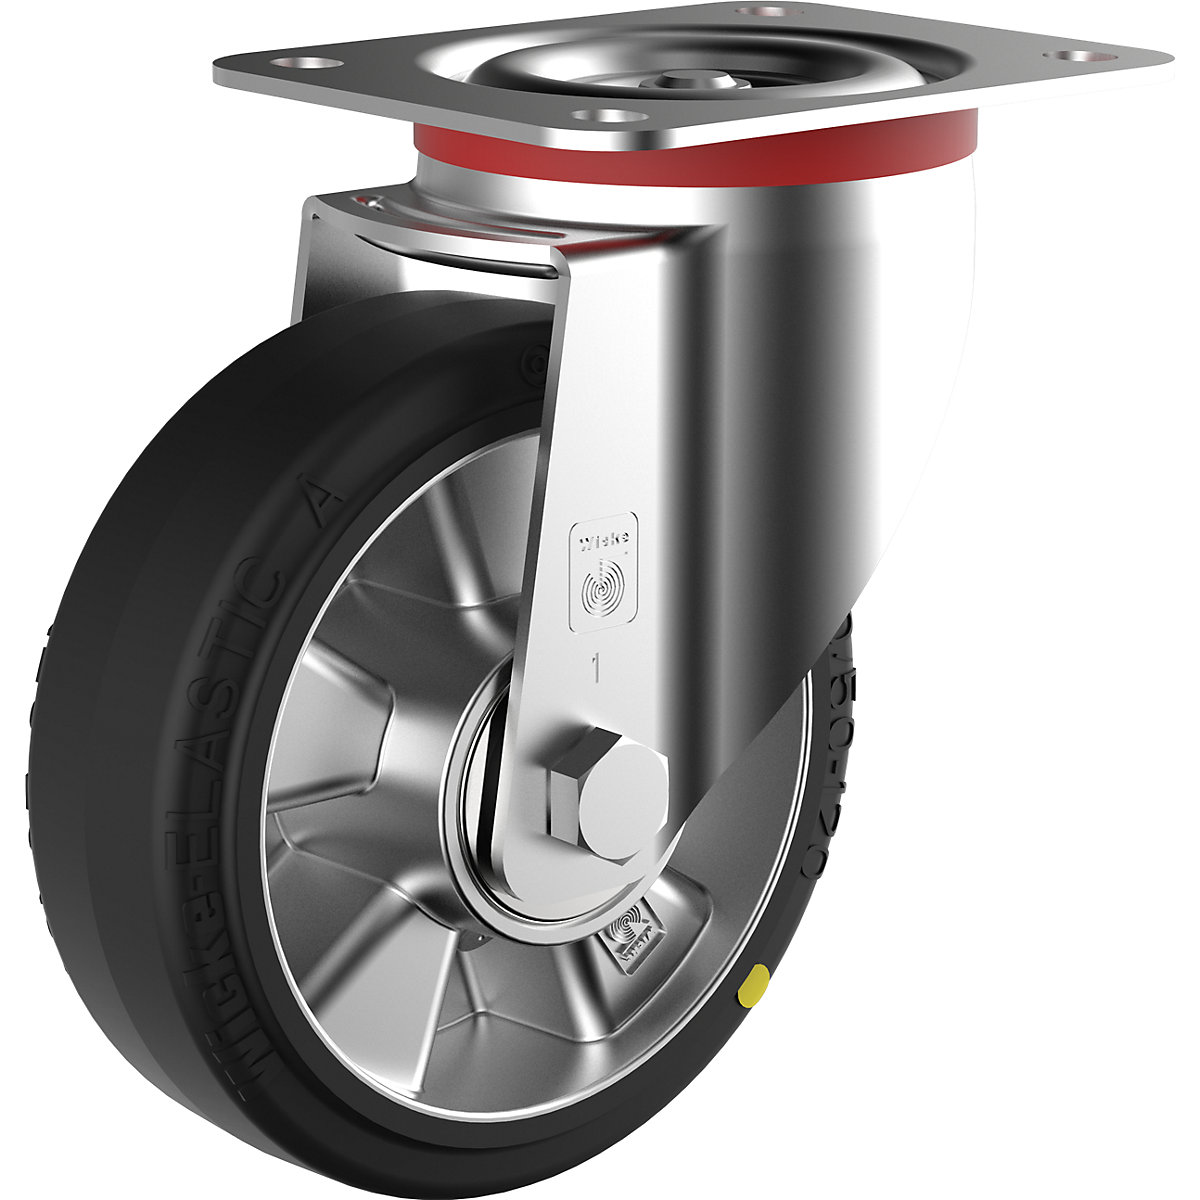 Pneu de borracha elástica ESD – Wicke, Ø x largura da roda 160 x 50 mm, capacidade de carga 400 kg, roda orientável-1